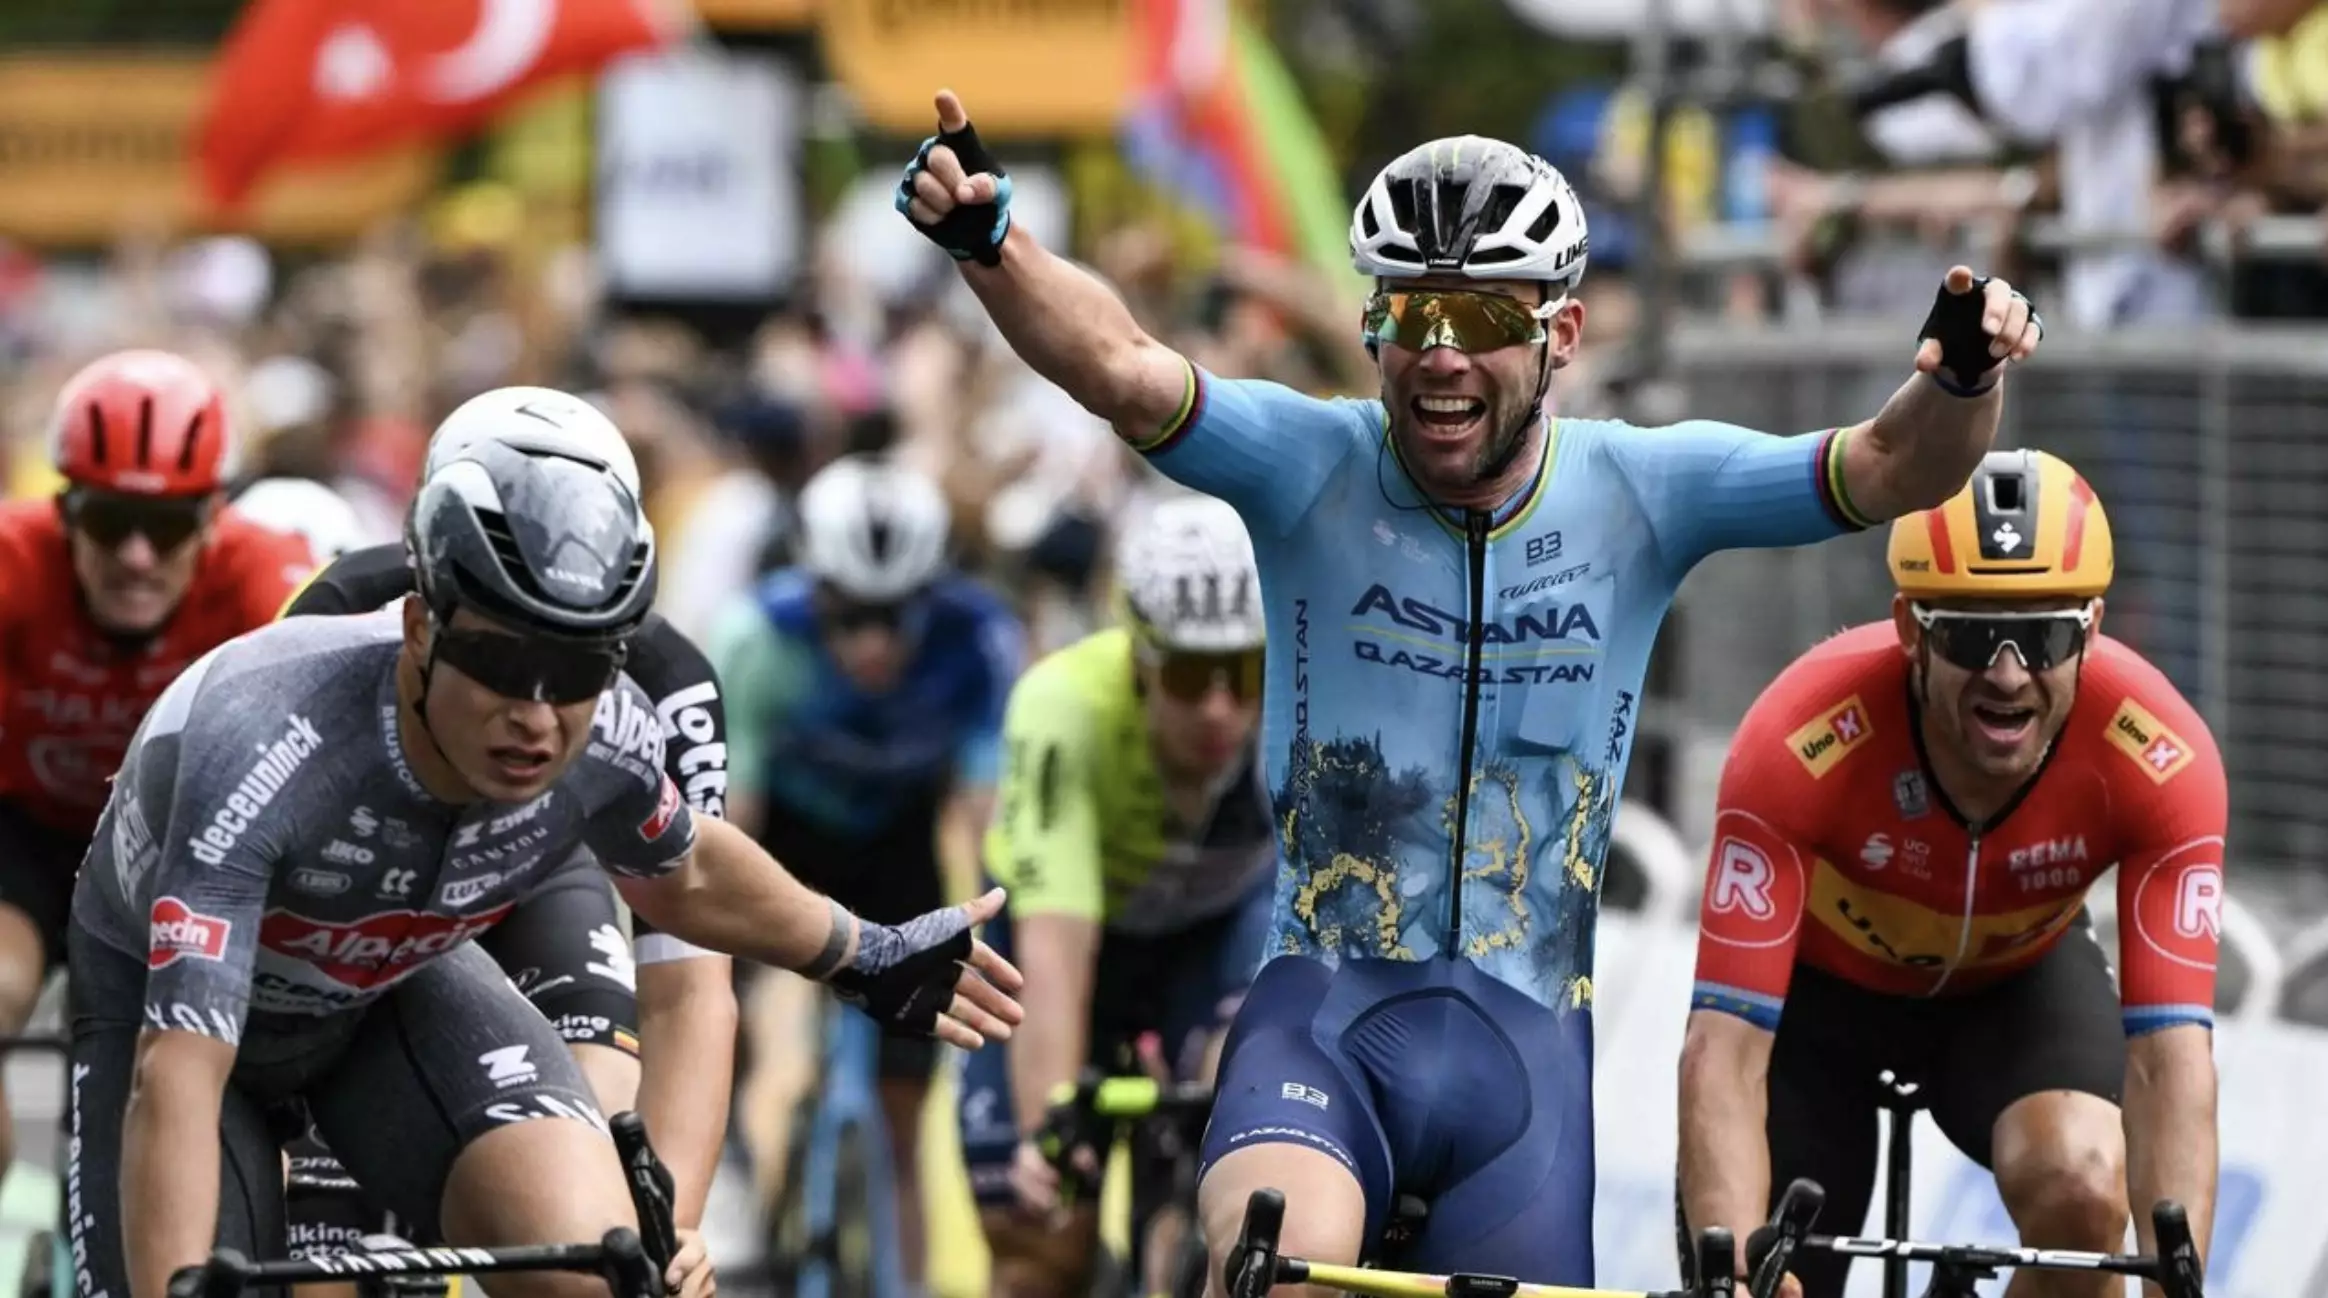 Велогонщик Astana Qazaqstan Team вошел в историю благодаря победе на этапе «Тур де Франс»